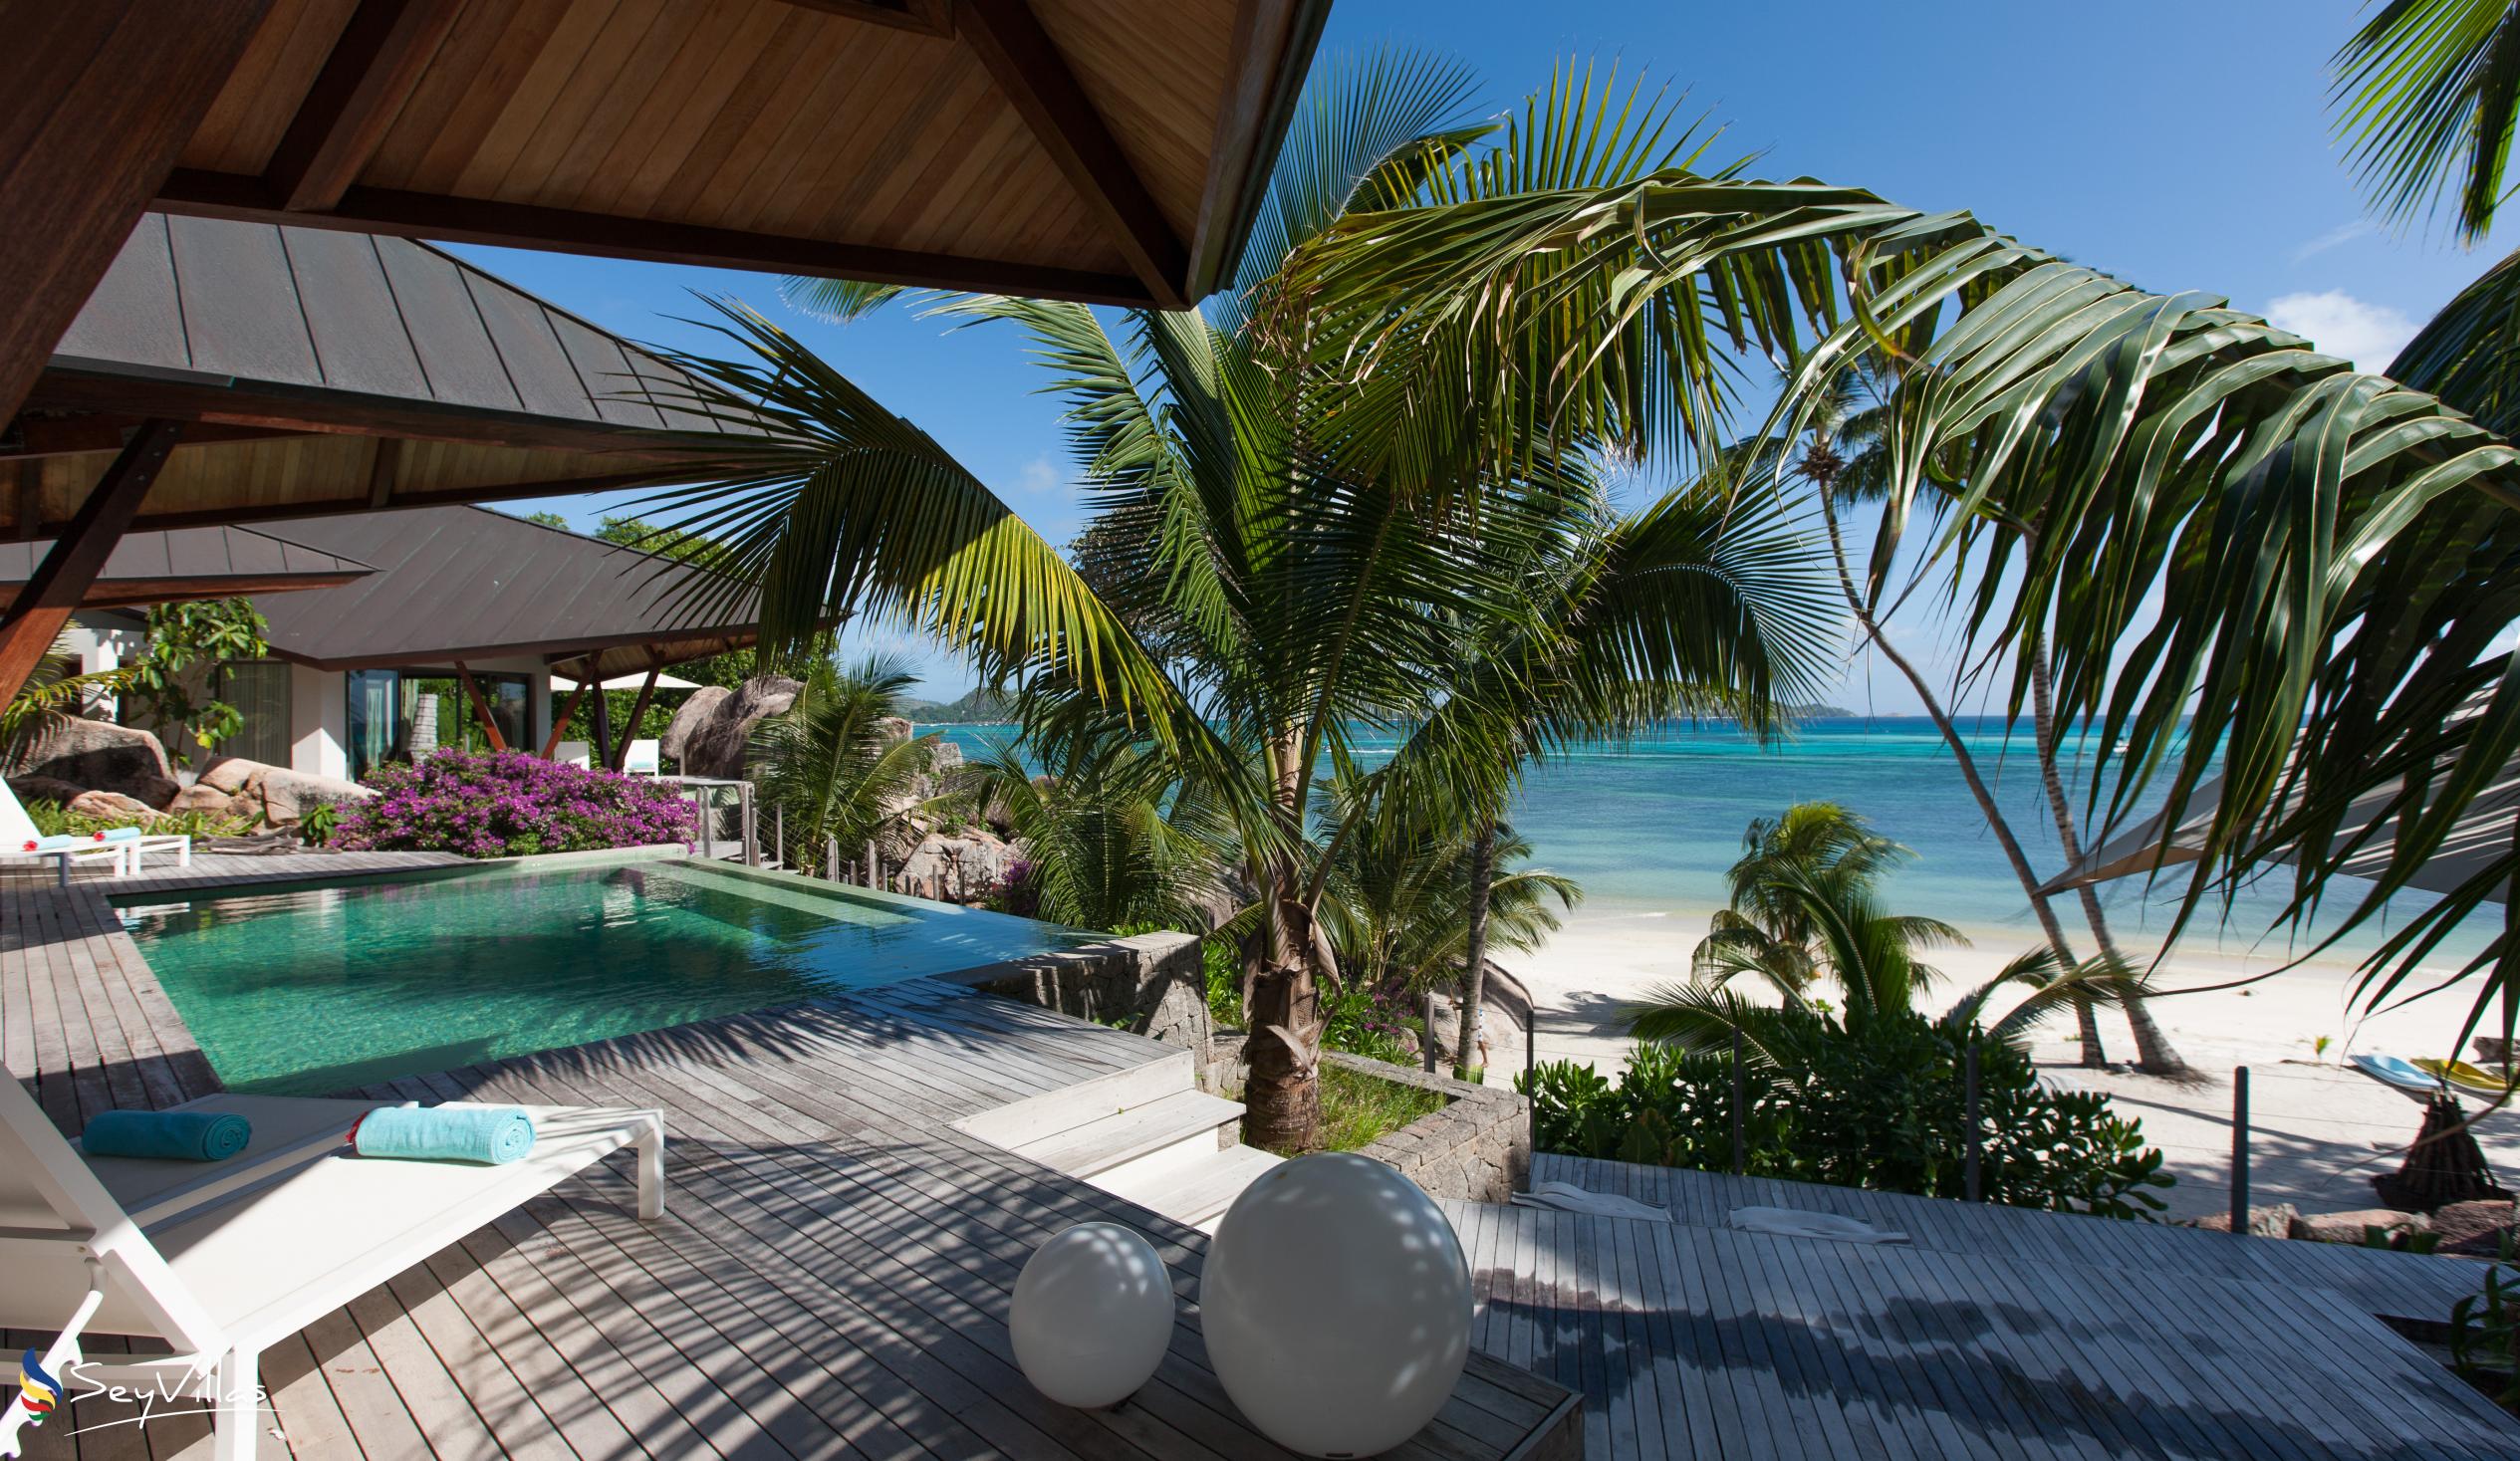 Foto 14: Villa Deckenia - Aussenbereich - Praslin (Seychellen)